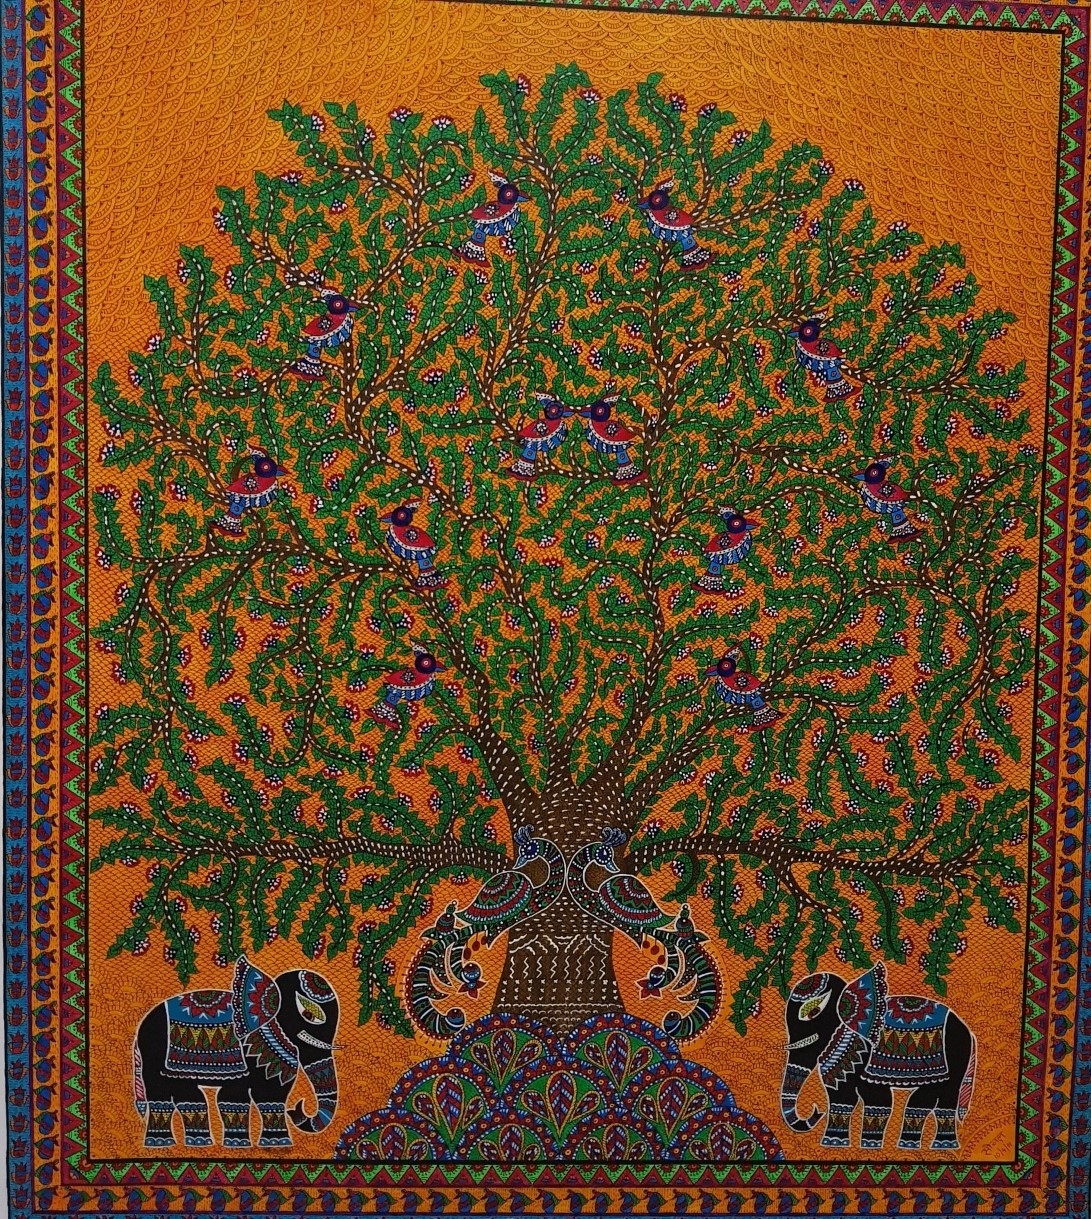 Kalptaru, the Tree Of Life 1